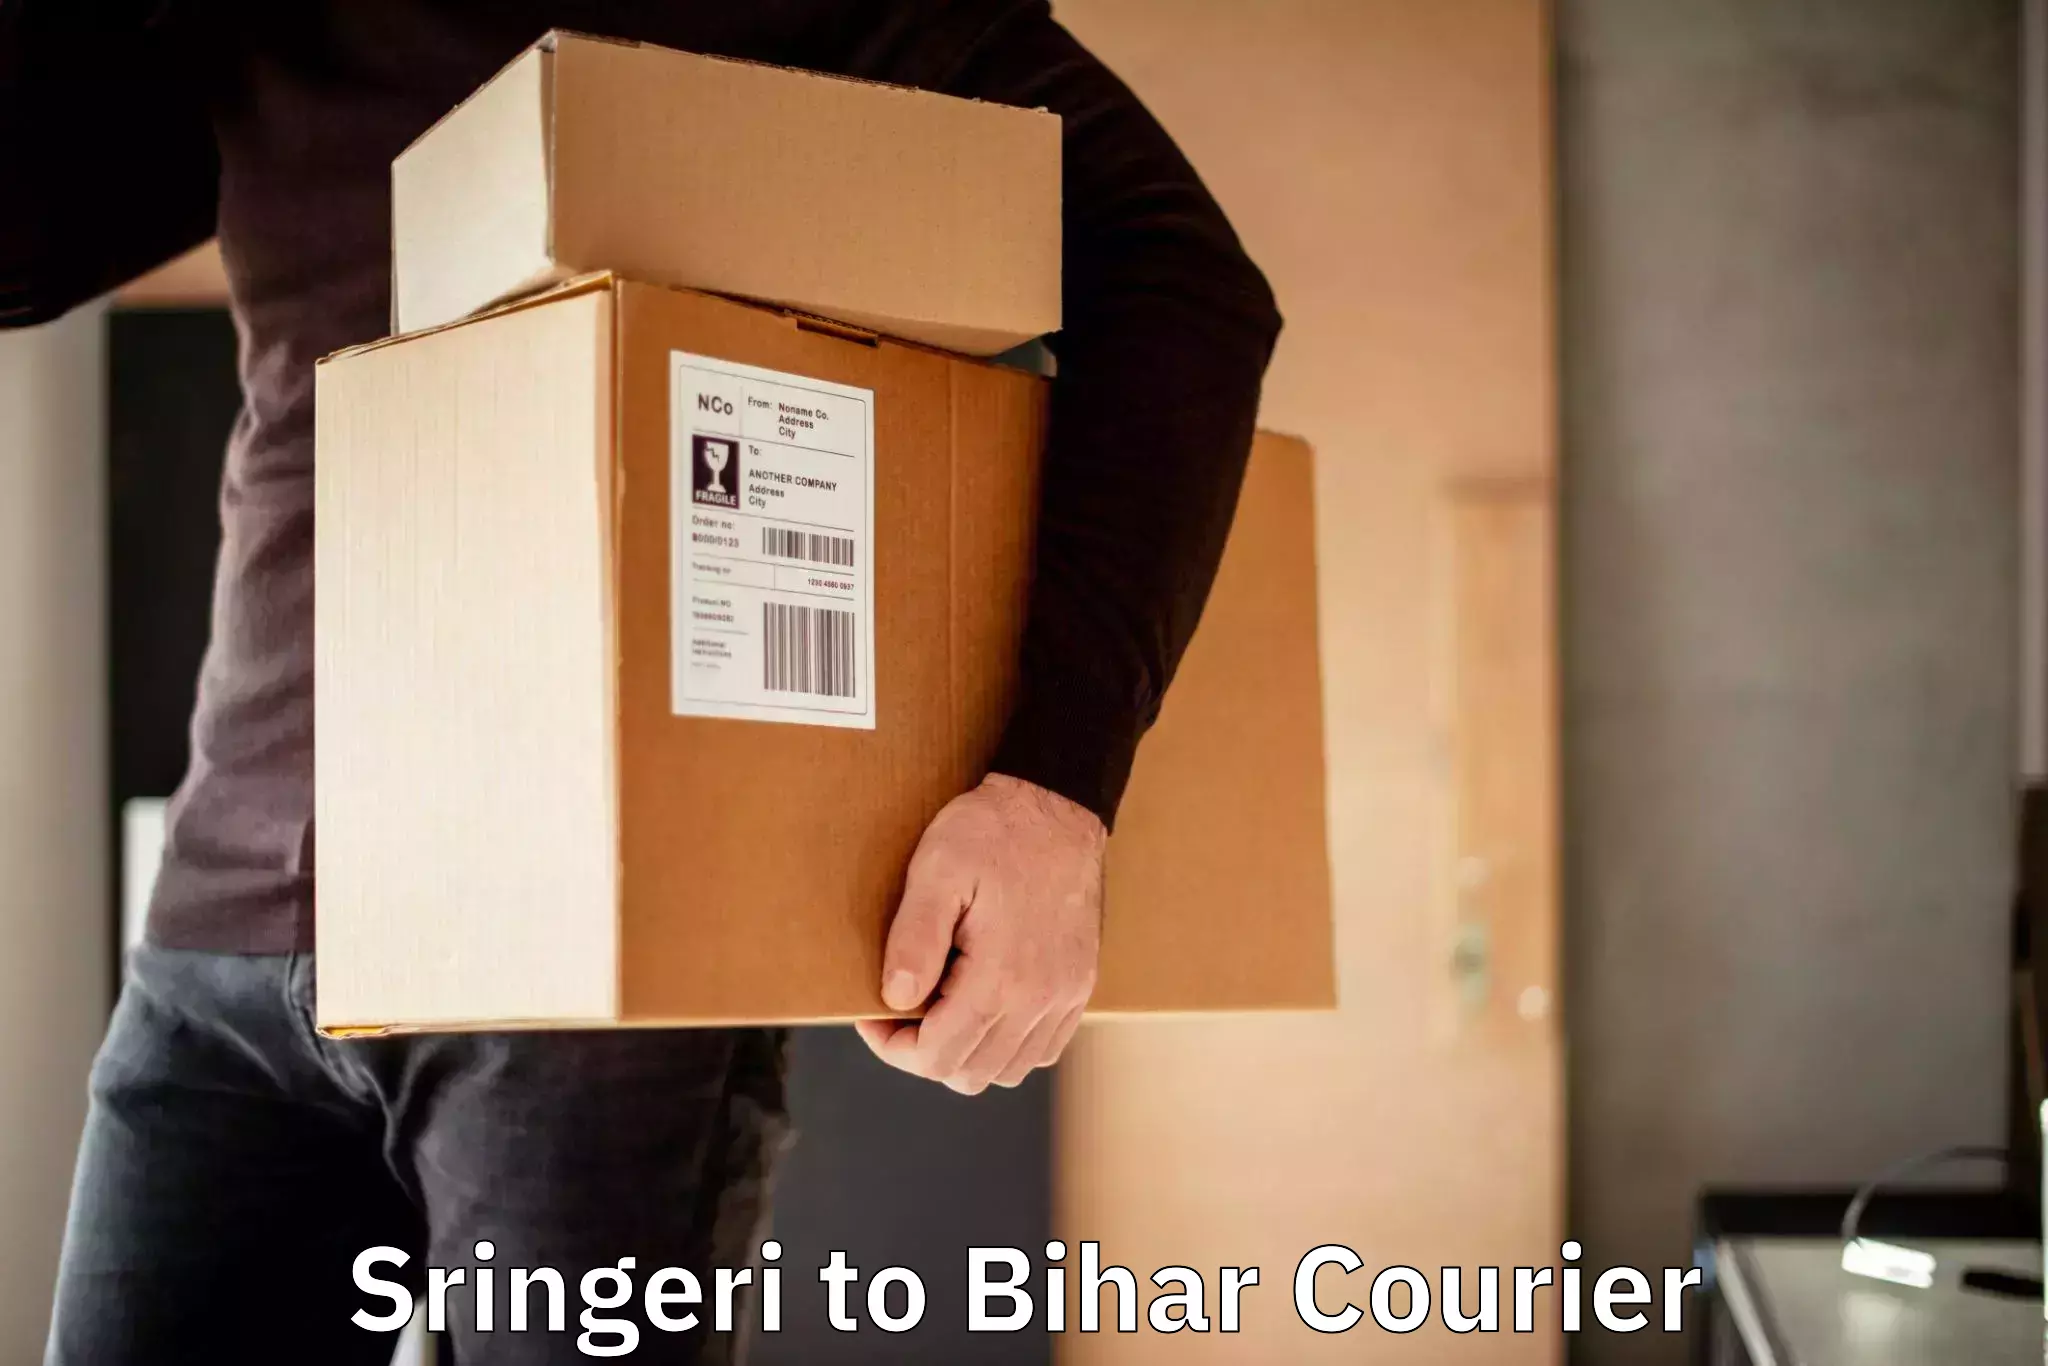 Full-service courier options Sringeri to Lakhisarai